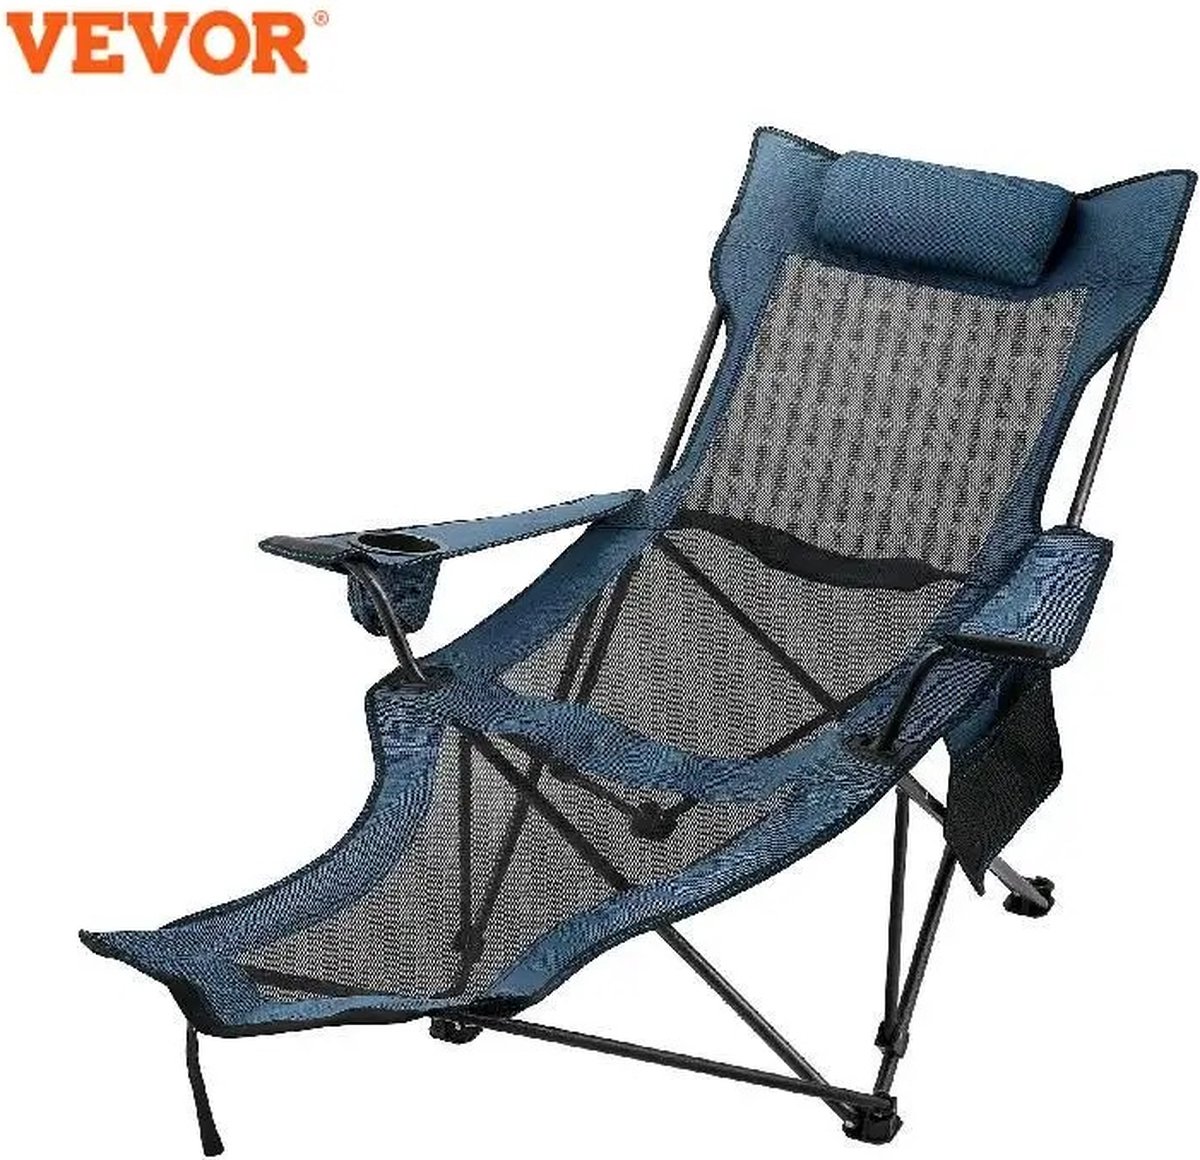 JK24 - Campingstoel - Opvouwbaar campingstoel - Campingstoel opvouwbaar - met rugleuning - met voetensteun - 110kg draagvermogen